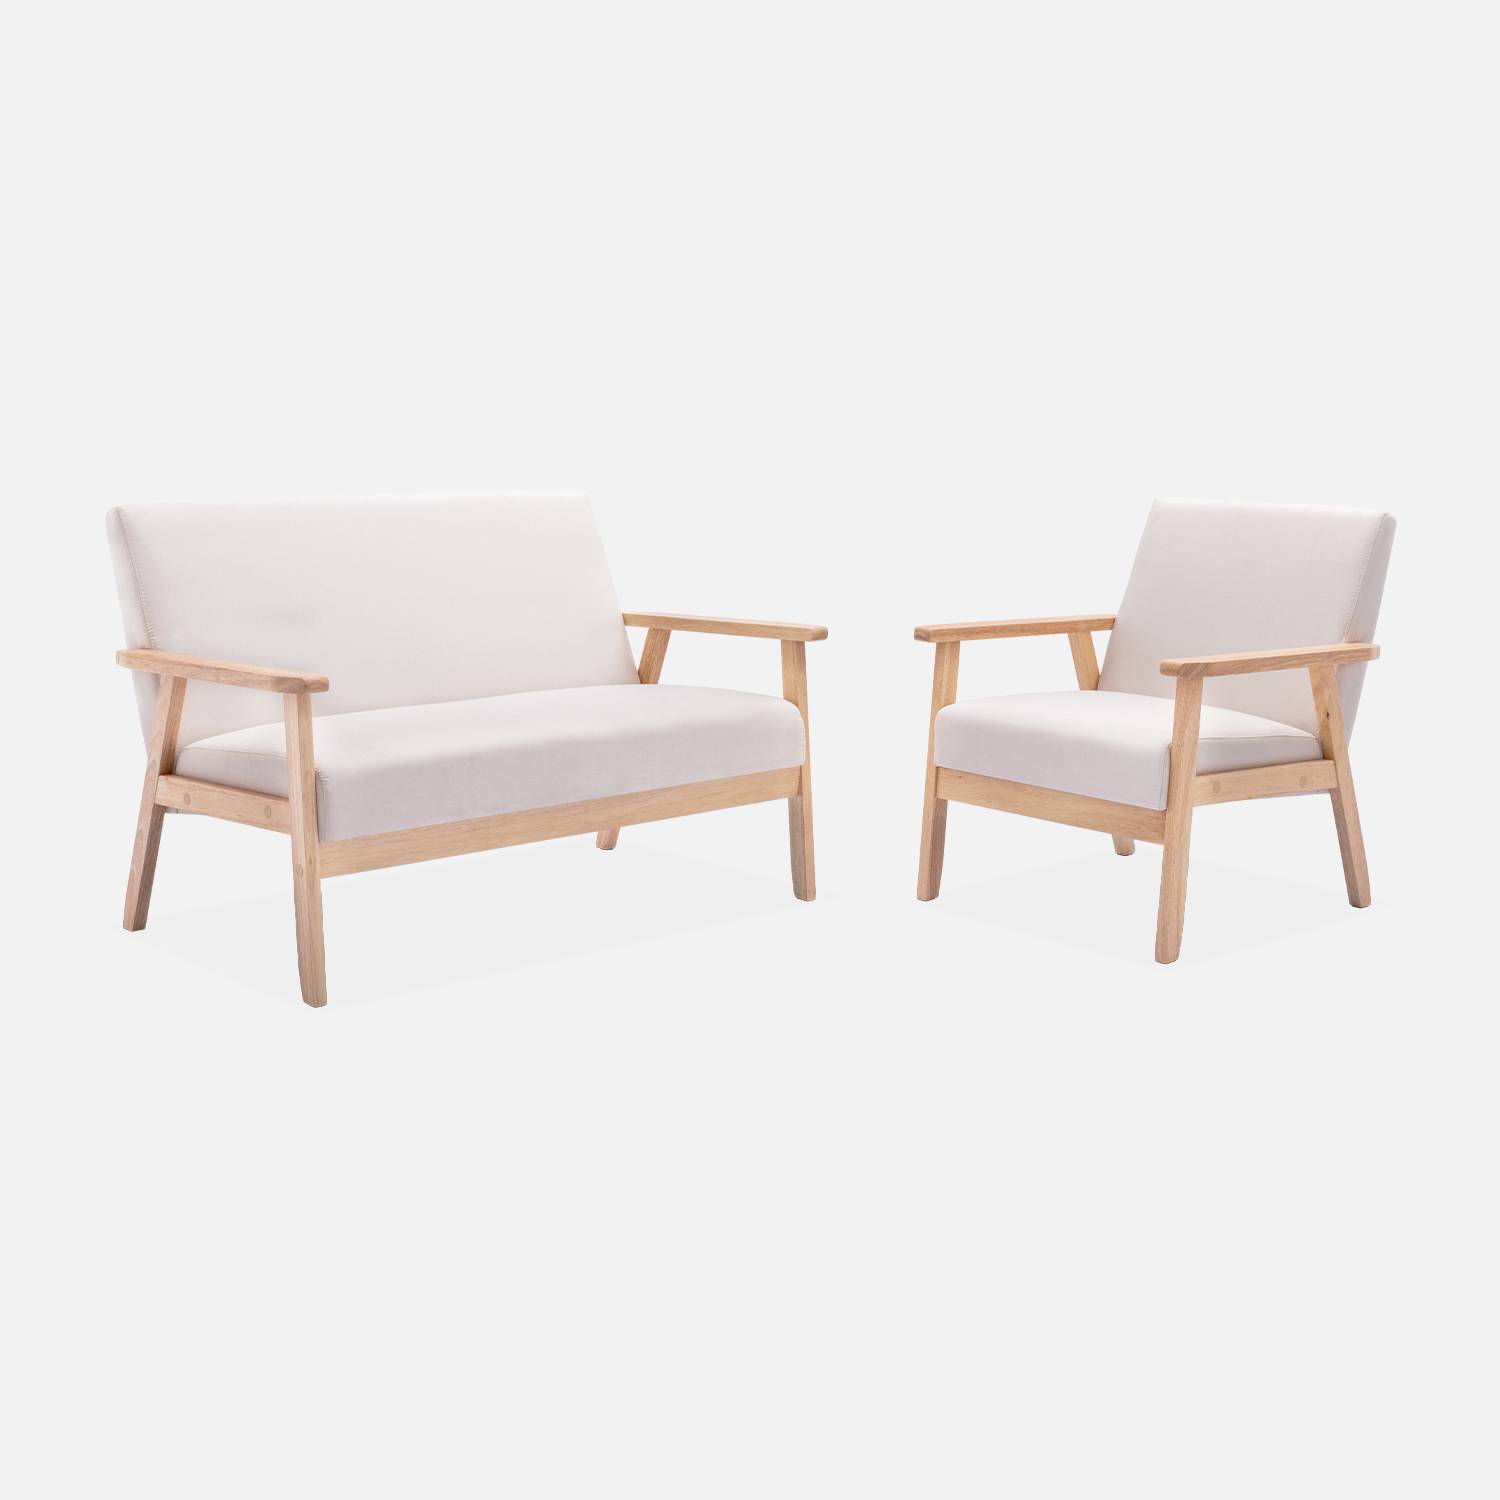 Panca per divano in legno e tessuto crema, Isak, L 114 x P 69,5 x H 73 cm Photo5